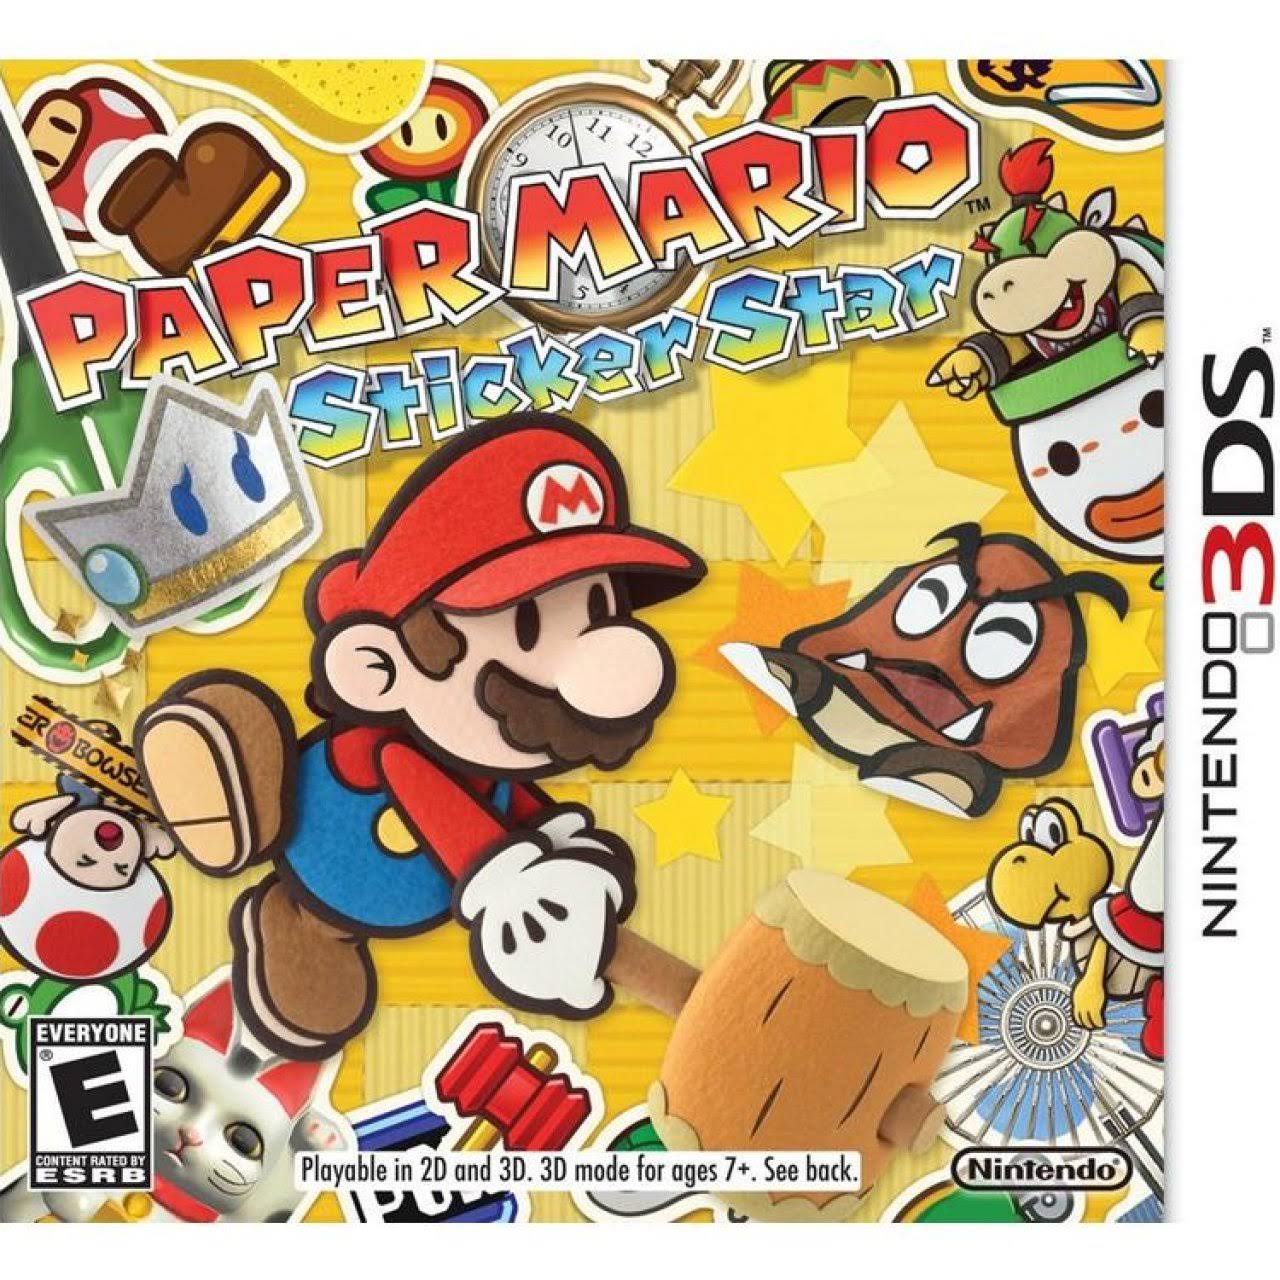 Nintendo Ctrpag5e Paper Mario Sticker Star - Nintendo 3DS